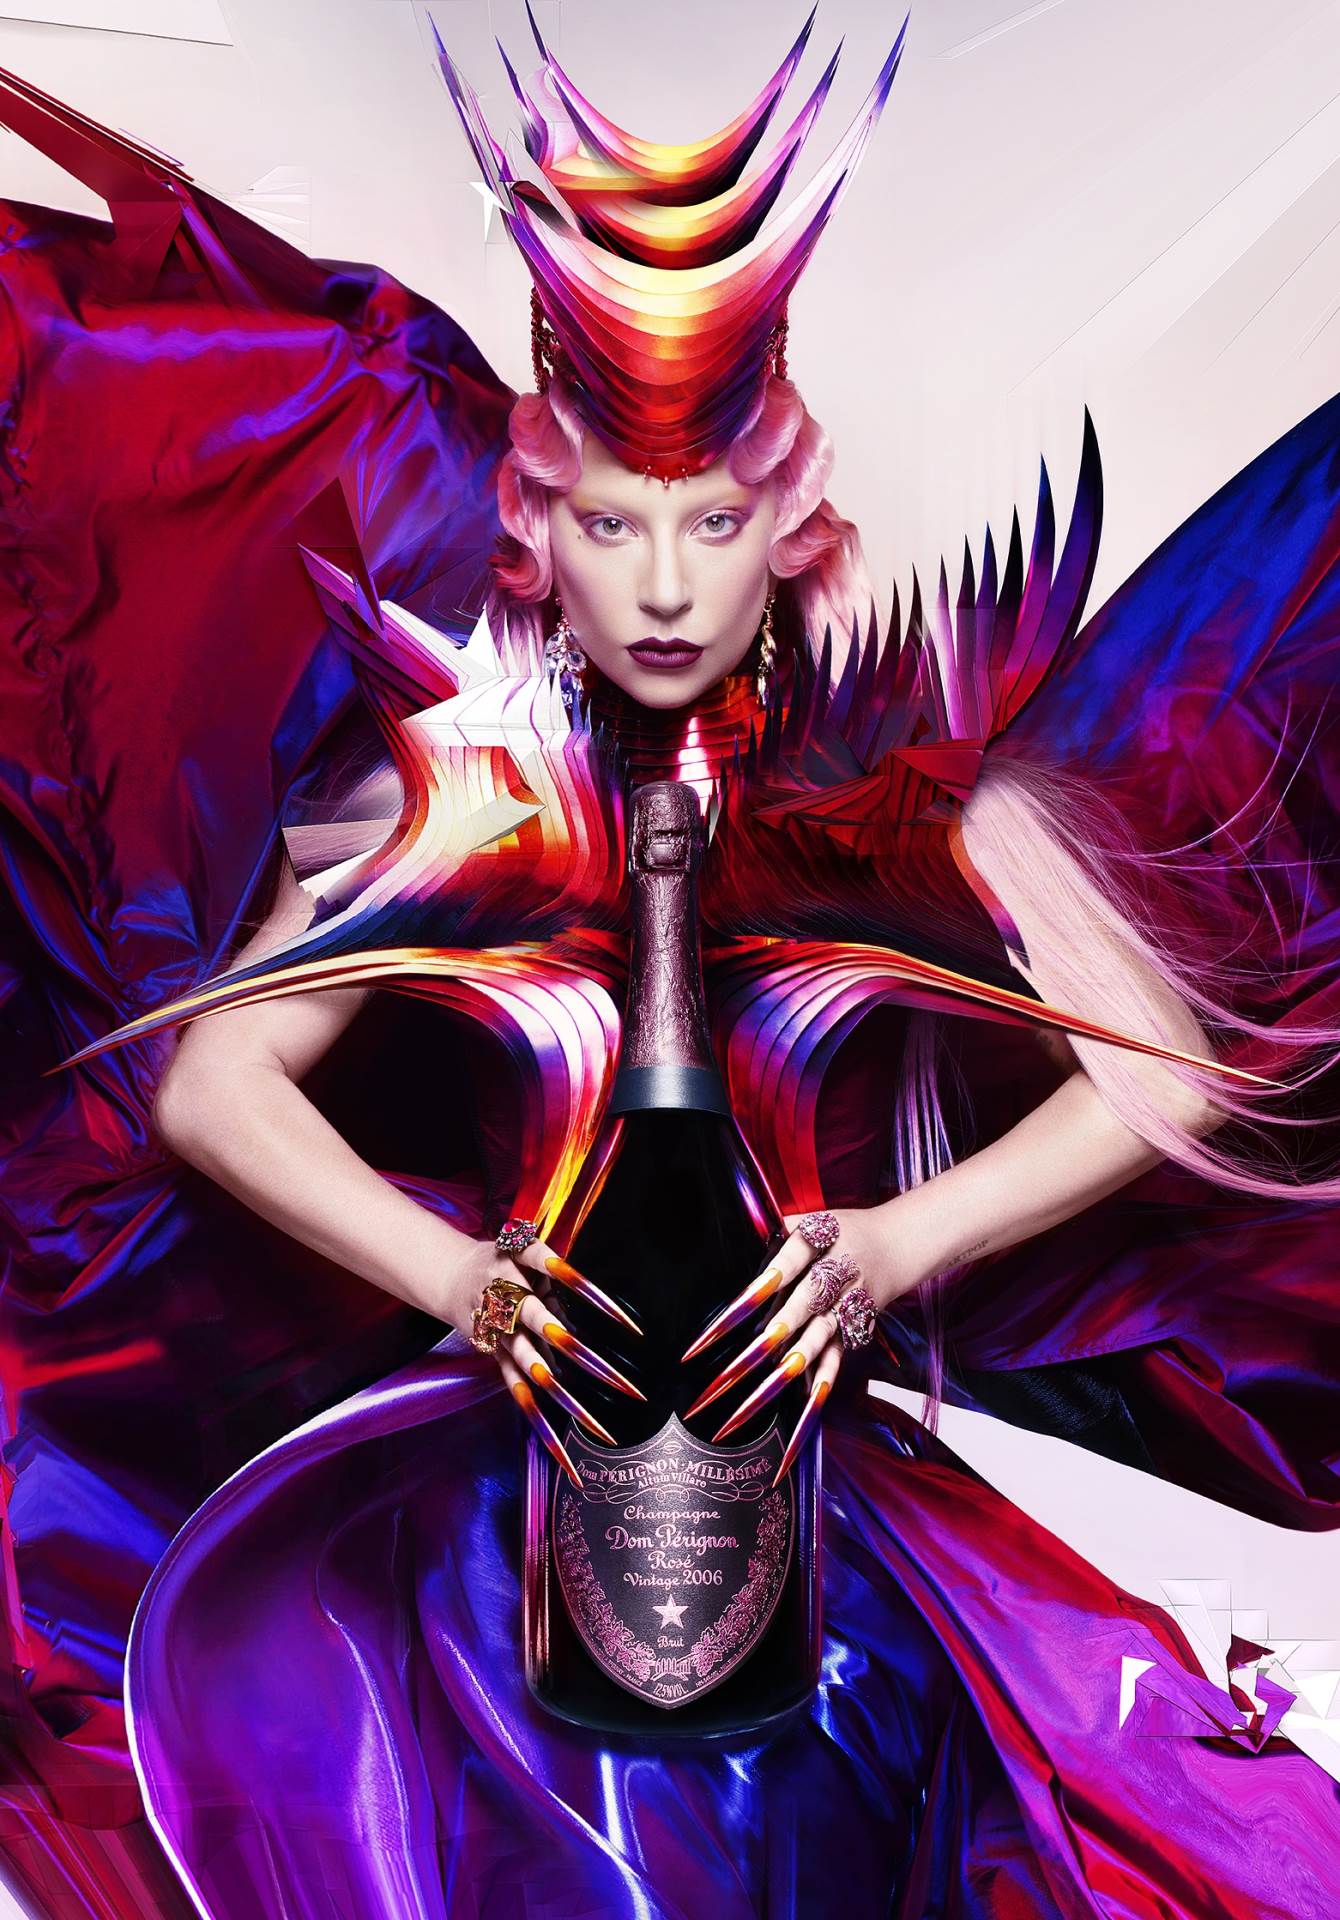 “Jako mi znači što sam pronašla kreativnog suradnika u Dom Pérignonu” kaže Gaga